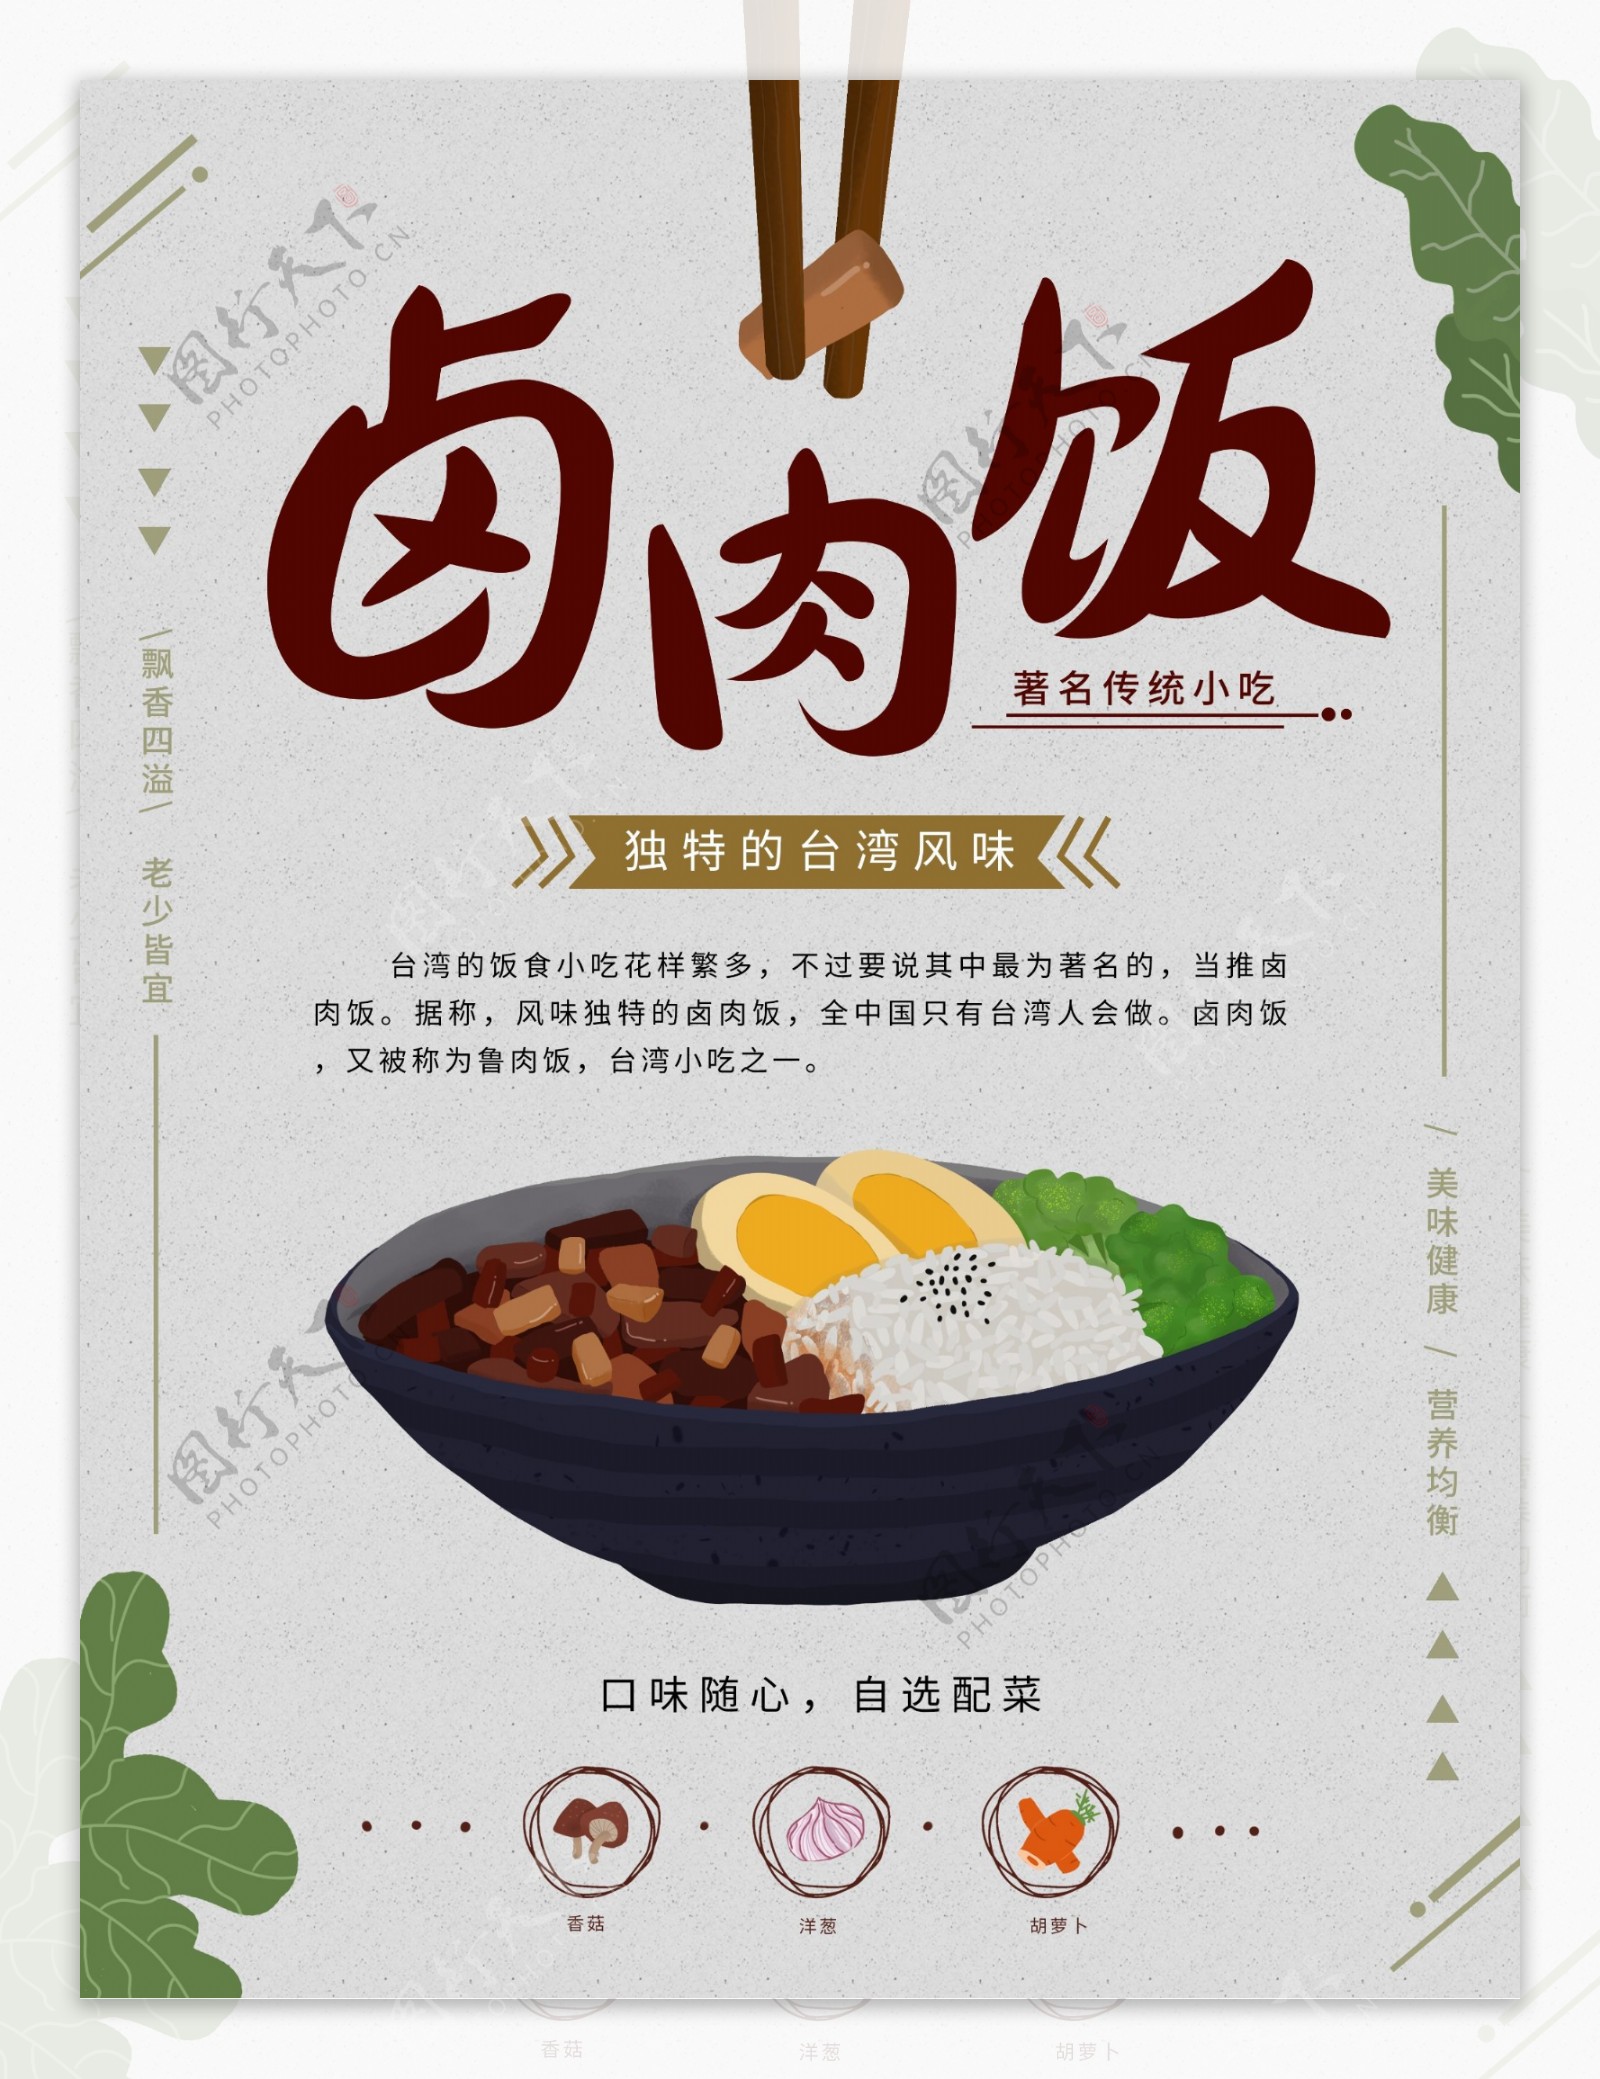 原创手绘插画台湾美食卤肉饭宣传海报